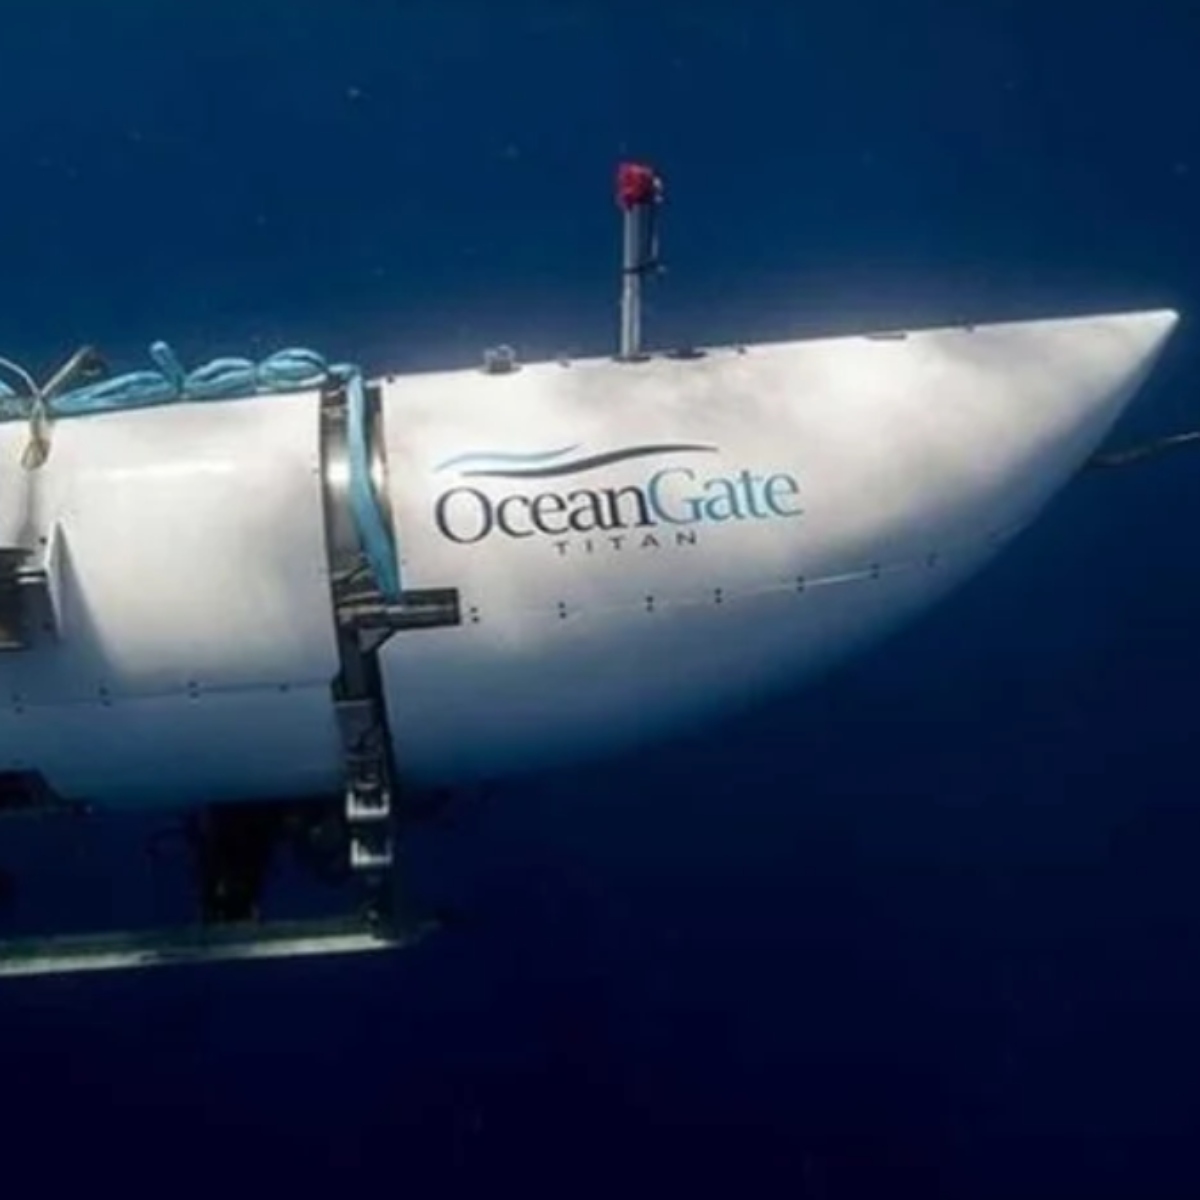  A comunicação com o submersível Titan, de 6,5 metros de comprimento, foi perdida no domingo, quase duas horas depois de iniciar sua descida em direção aos vestígios do mítico transatlântico, que fica a quase 4.000 metros de profundidade, a cerca de 600 quilômetros de Newfoundland, no norte atlântico. 